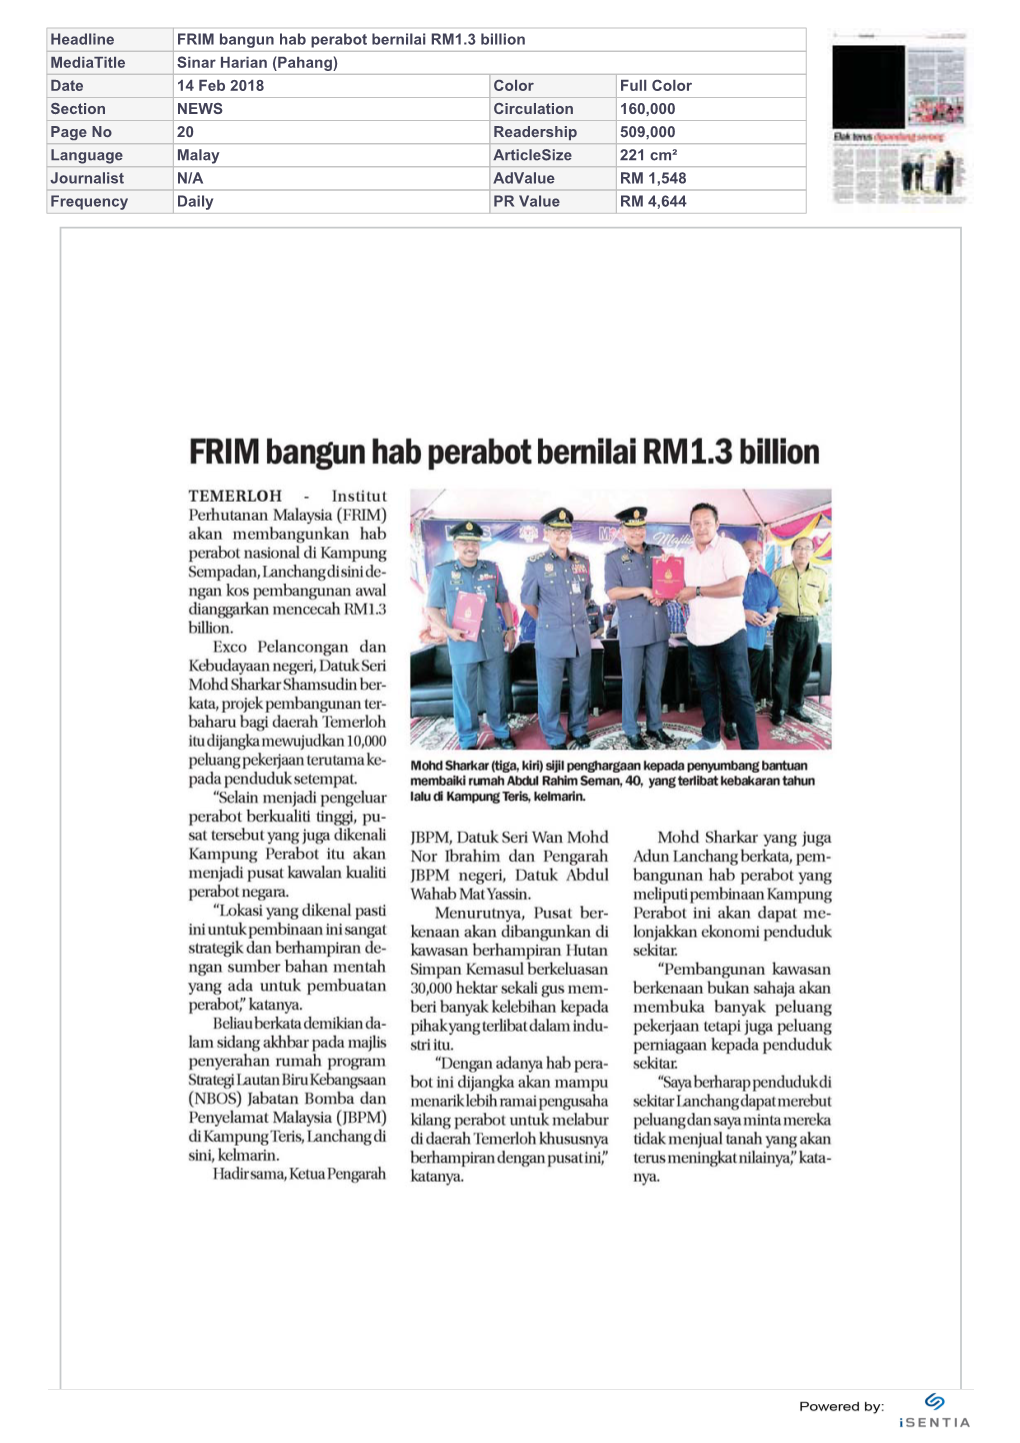 FRIM Bangun Hab Perabot Bernilai RM1.3 Billion